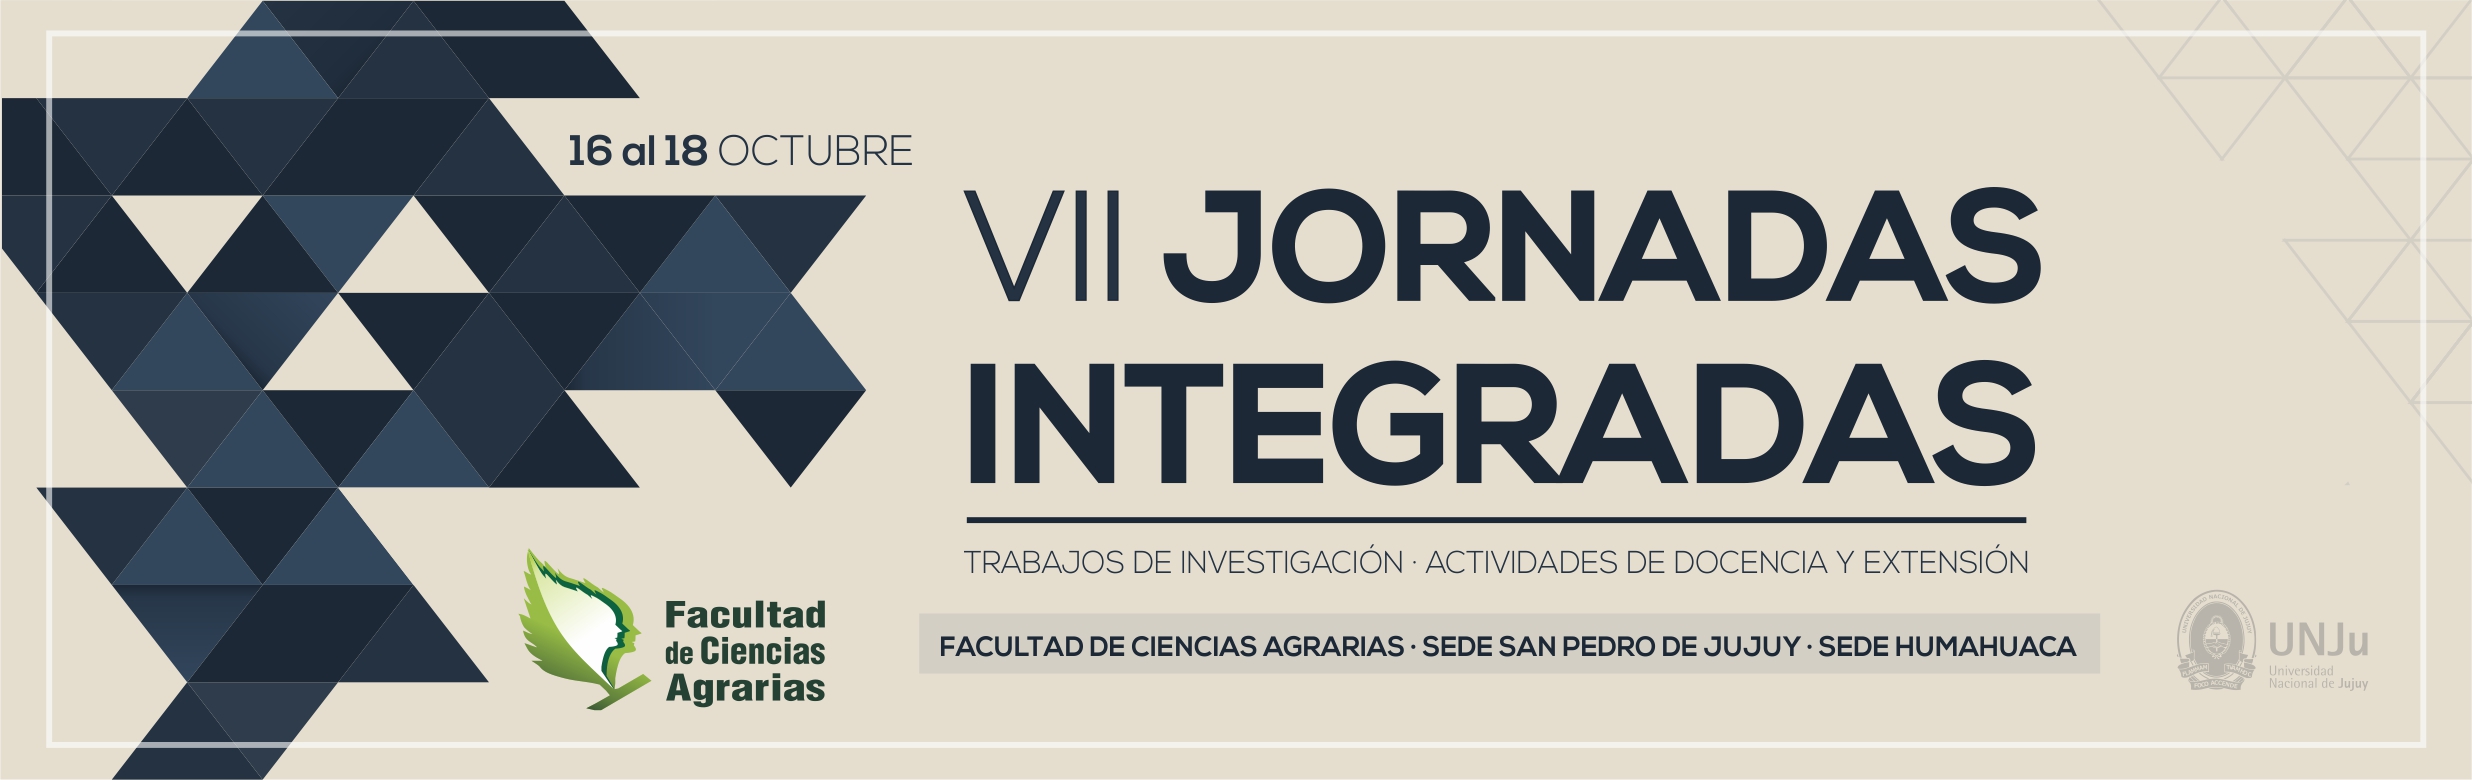 vii_jornadas_integradas